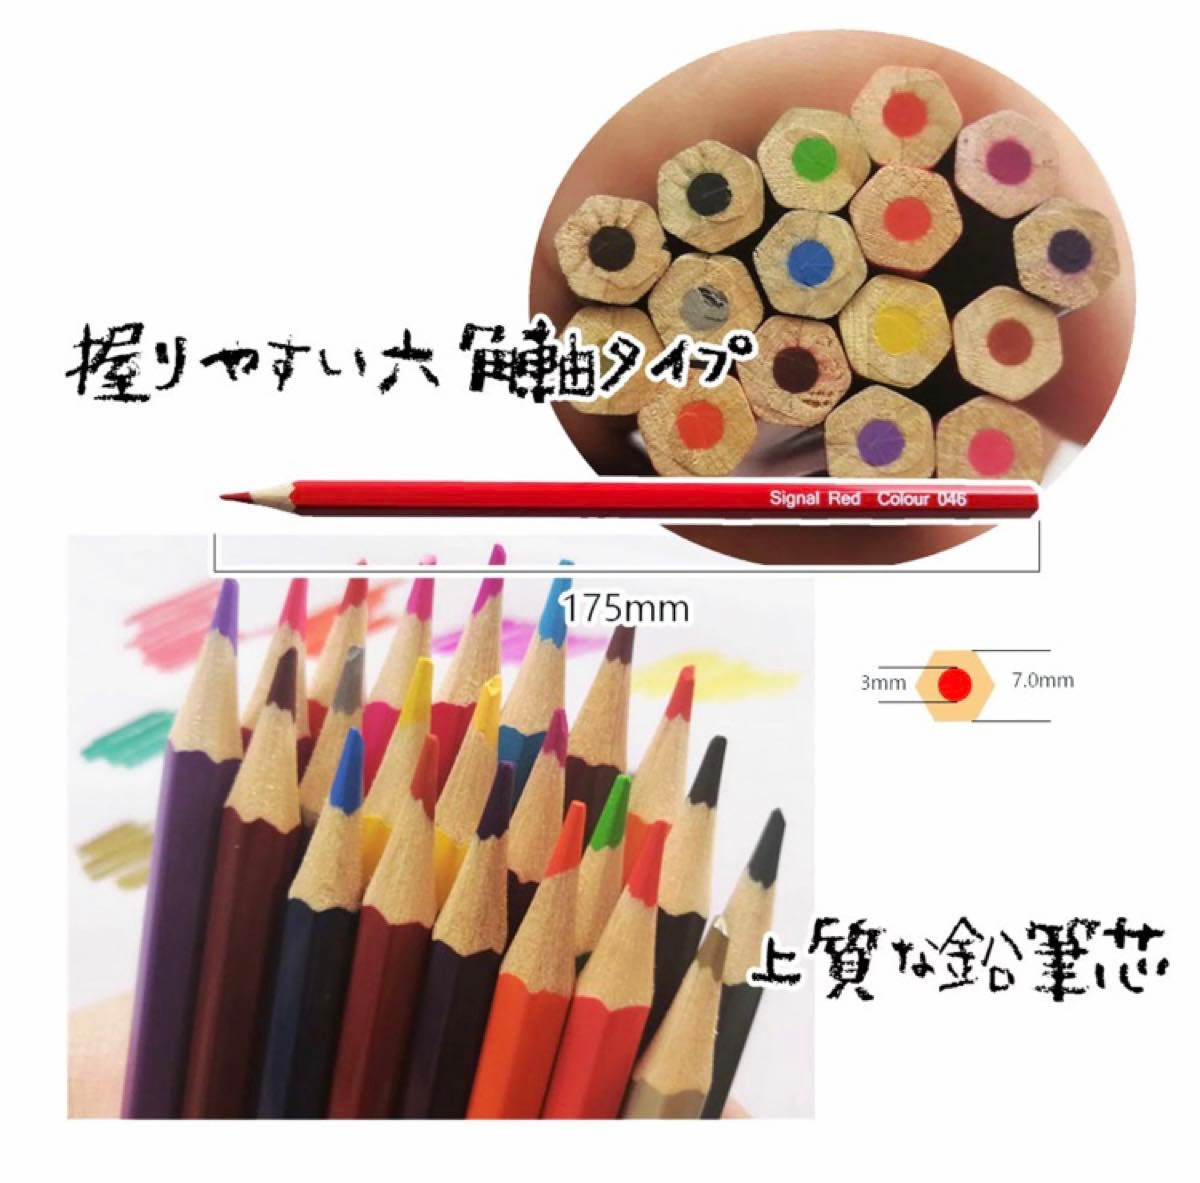 72色 油性色鉛筆 可愛い 収納バック付き 色鉛筆セット 鉛筆削り付き 色鉛筆 いろえんぴつ 油性 塗り絵 スケッチ 